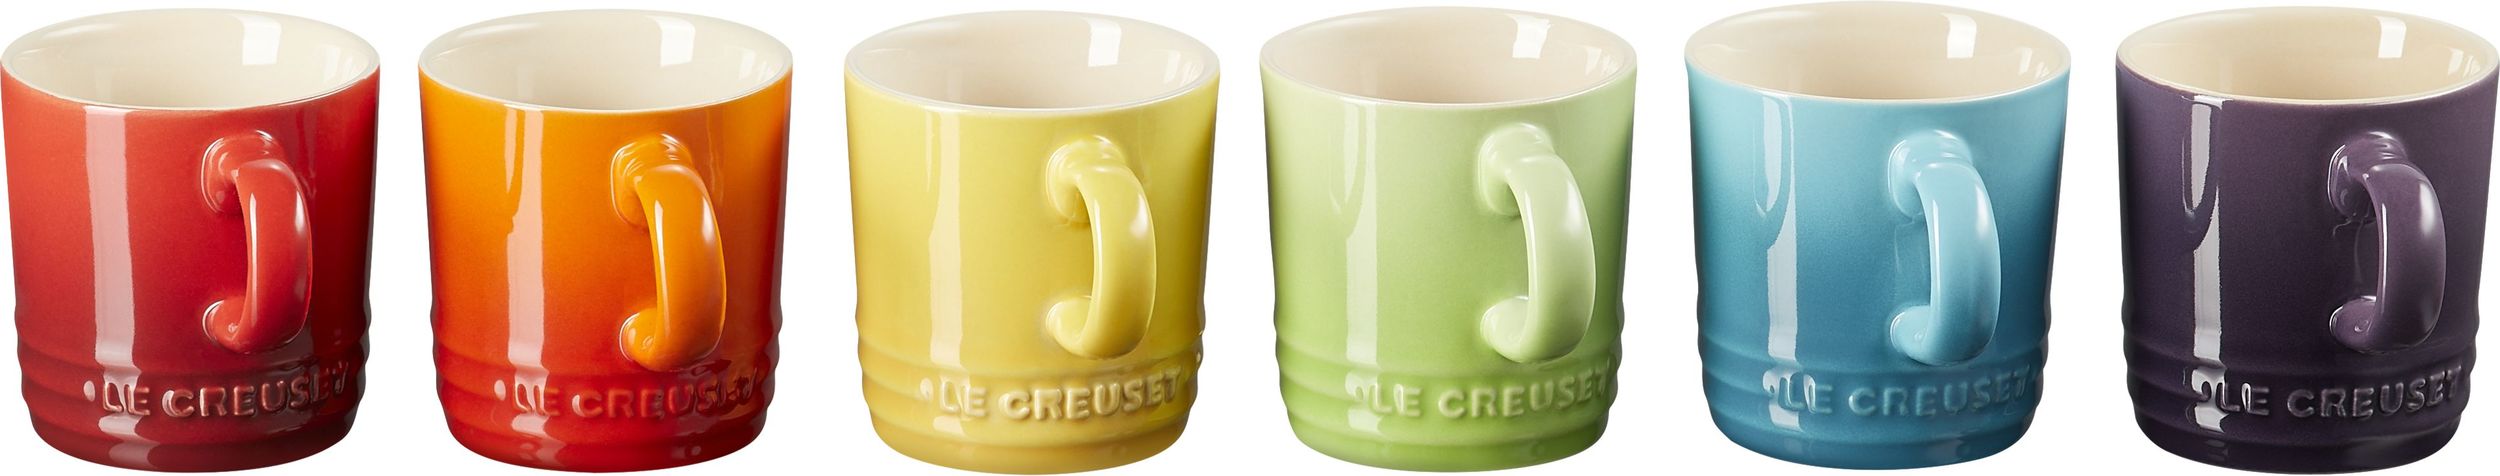 https://3fa-media.com/le-creuset/le-creuset-le-creuset-rainbow-espresso-cups-100-ml-colourful-6-pcs__127214_7c67cd7-s2500x2500.jpg